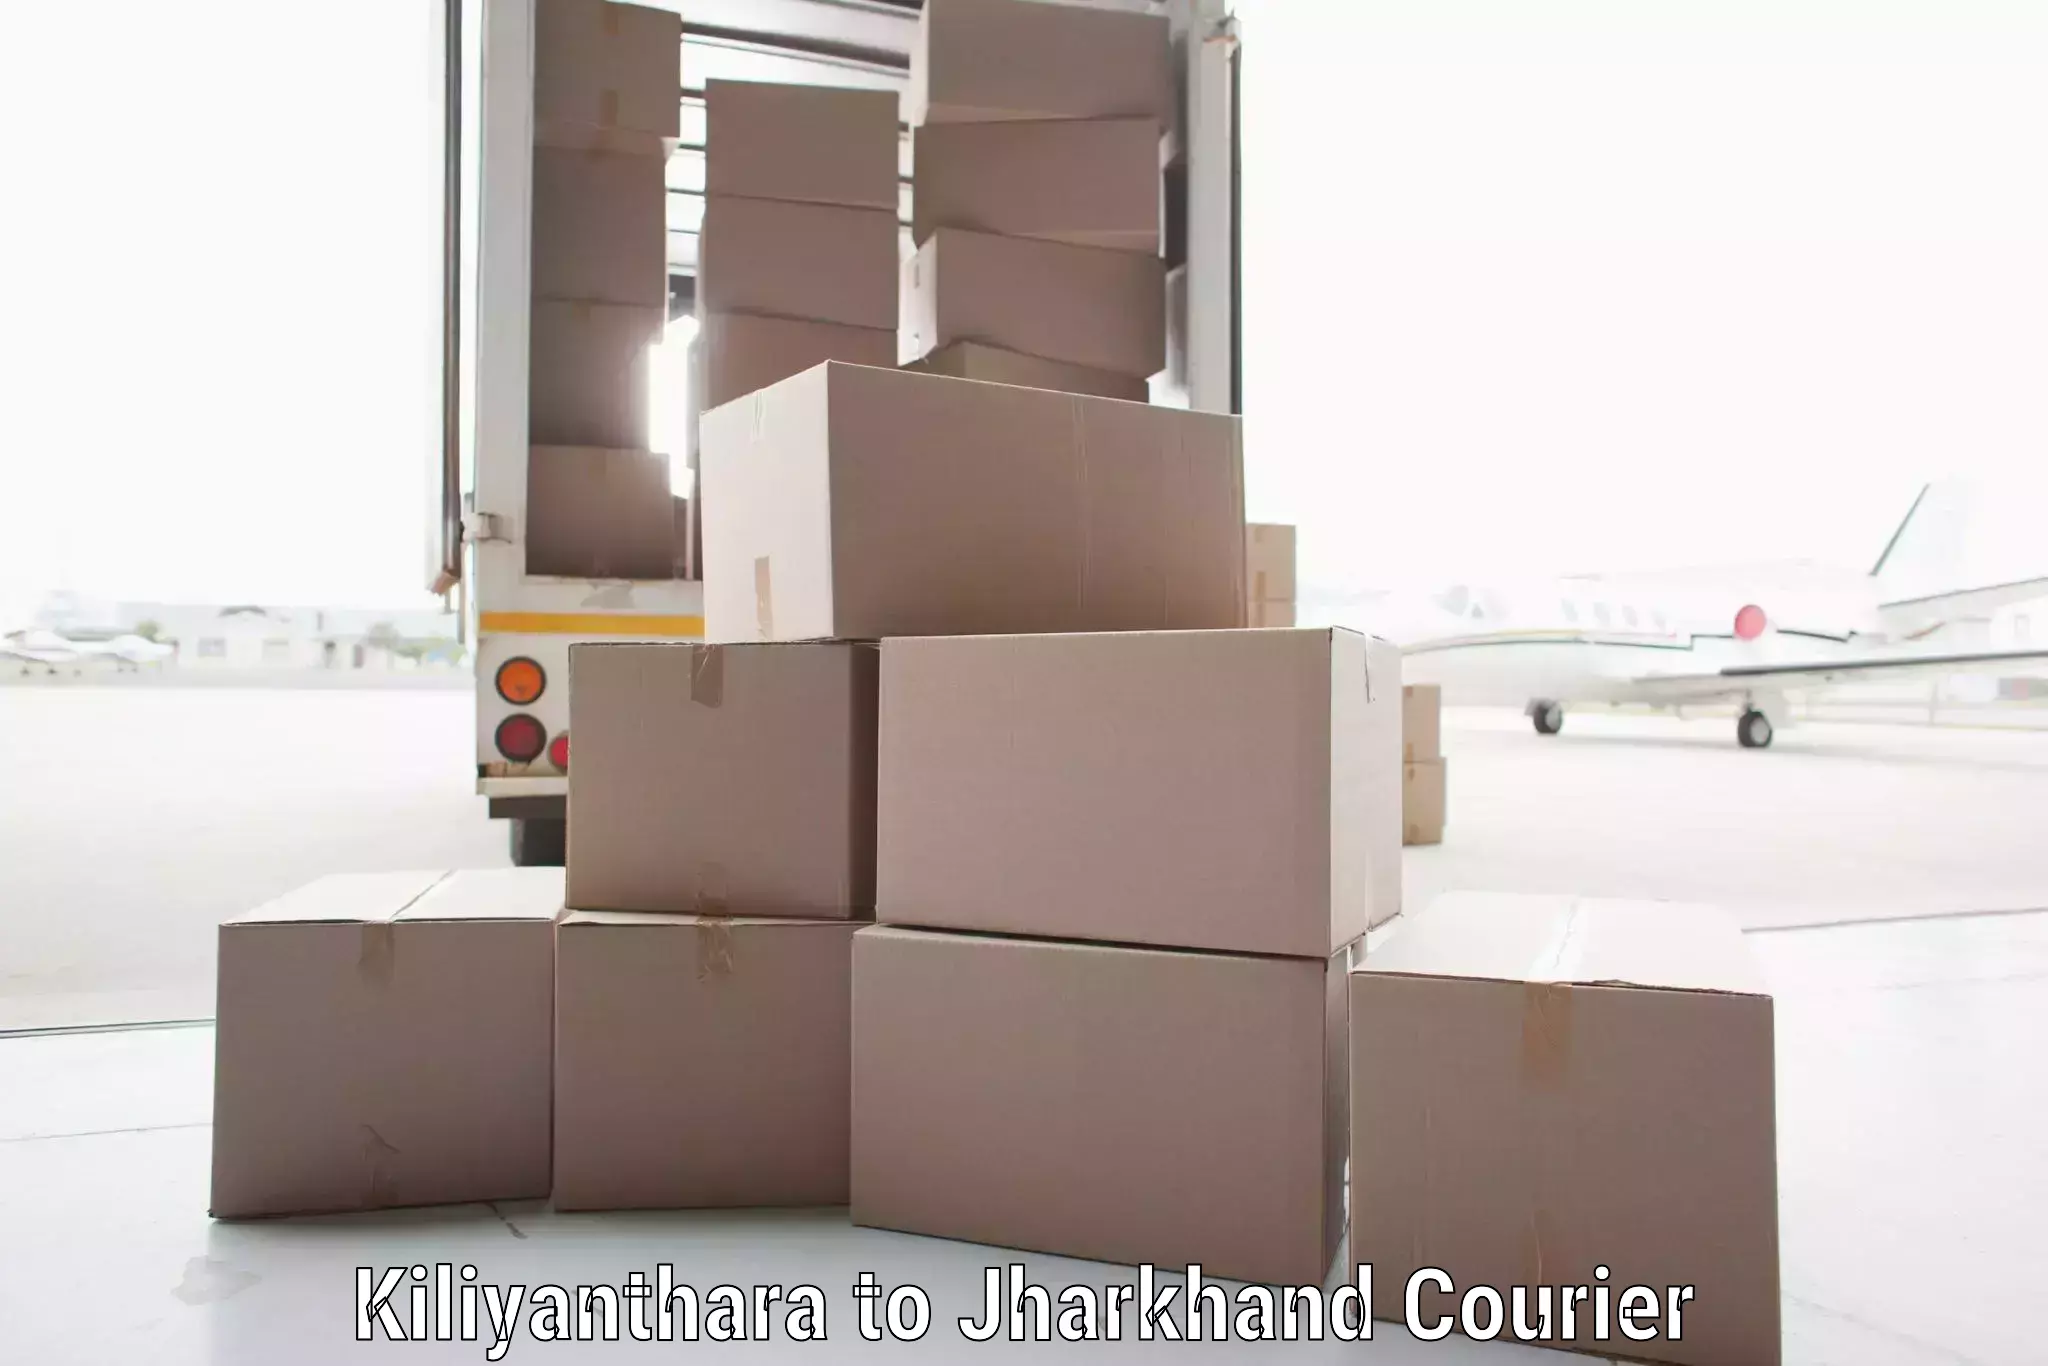 Global shipping solutions Kiliyanthara to Giridih